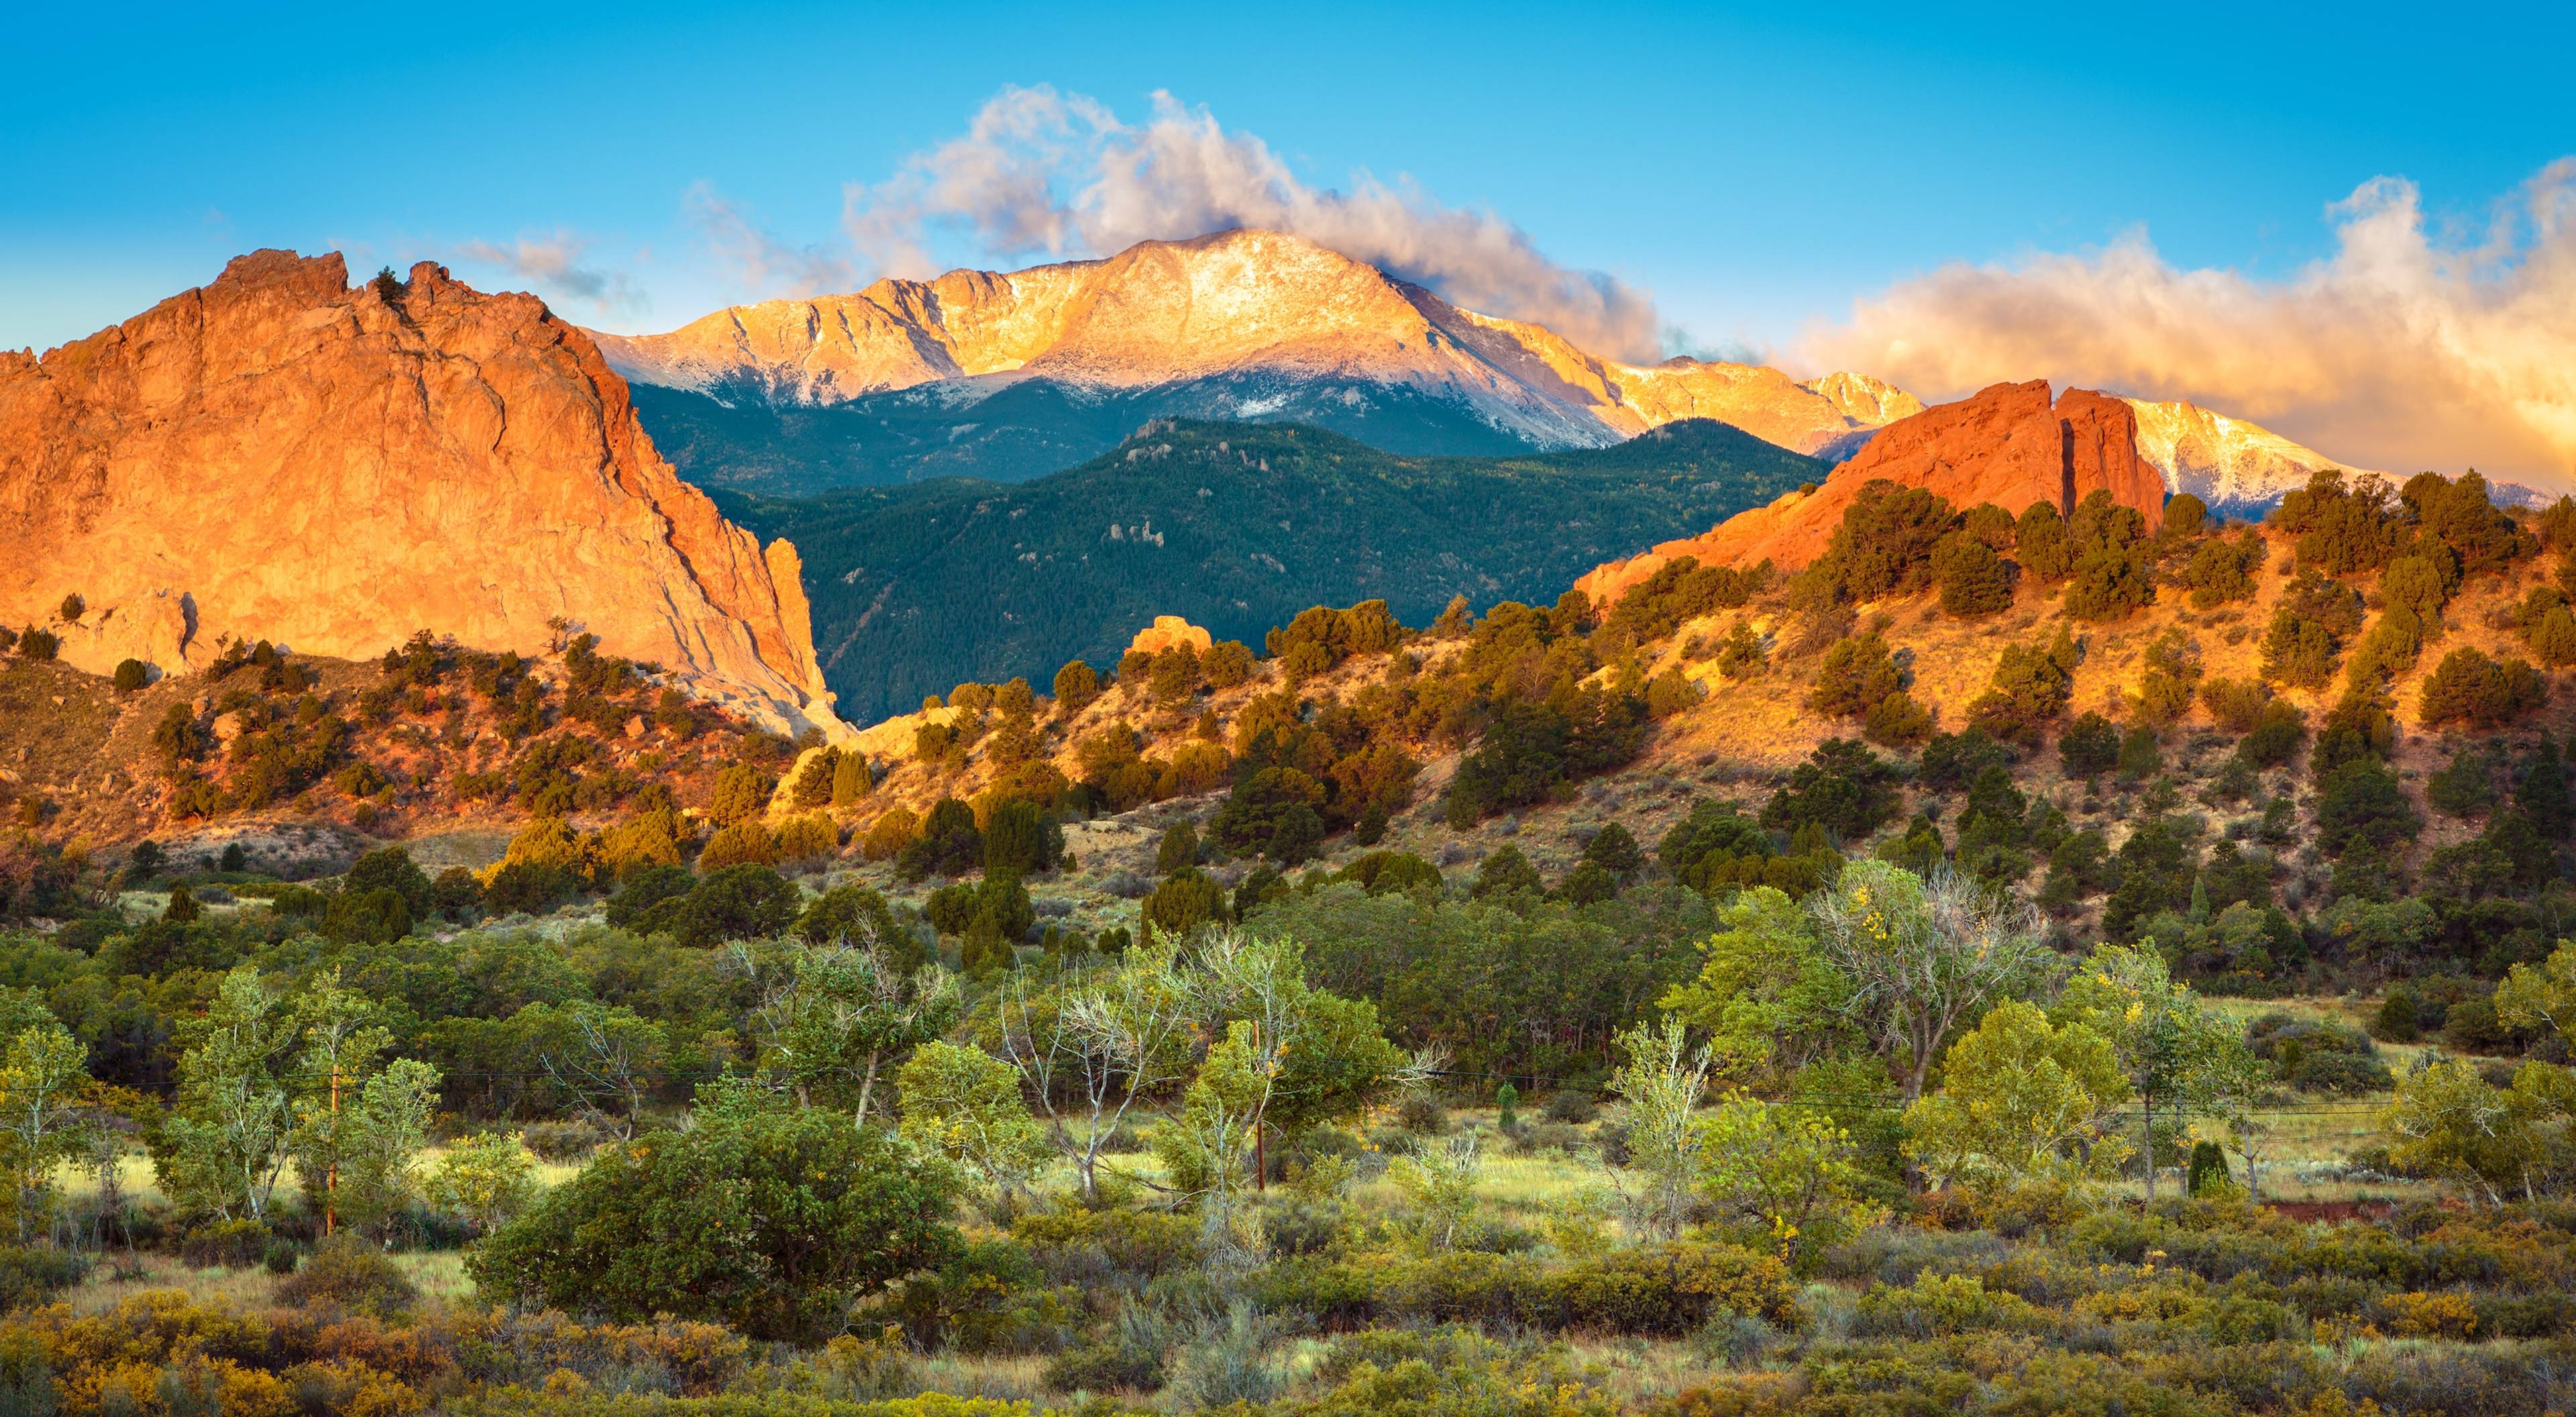 ⚡️ Колорадо-Спрингс - Дуранго: Драматические горные дороги, походы и горячие источники